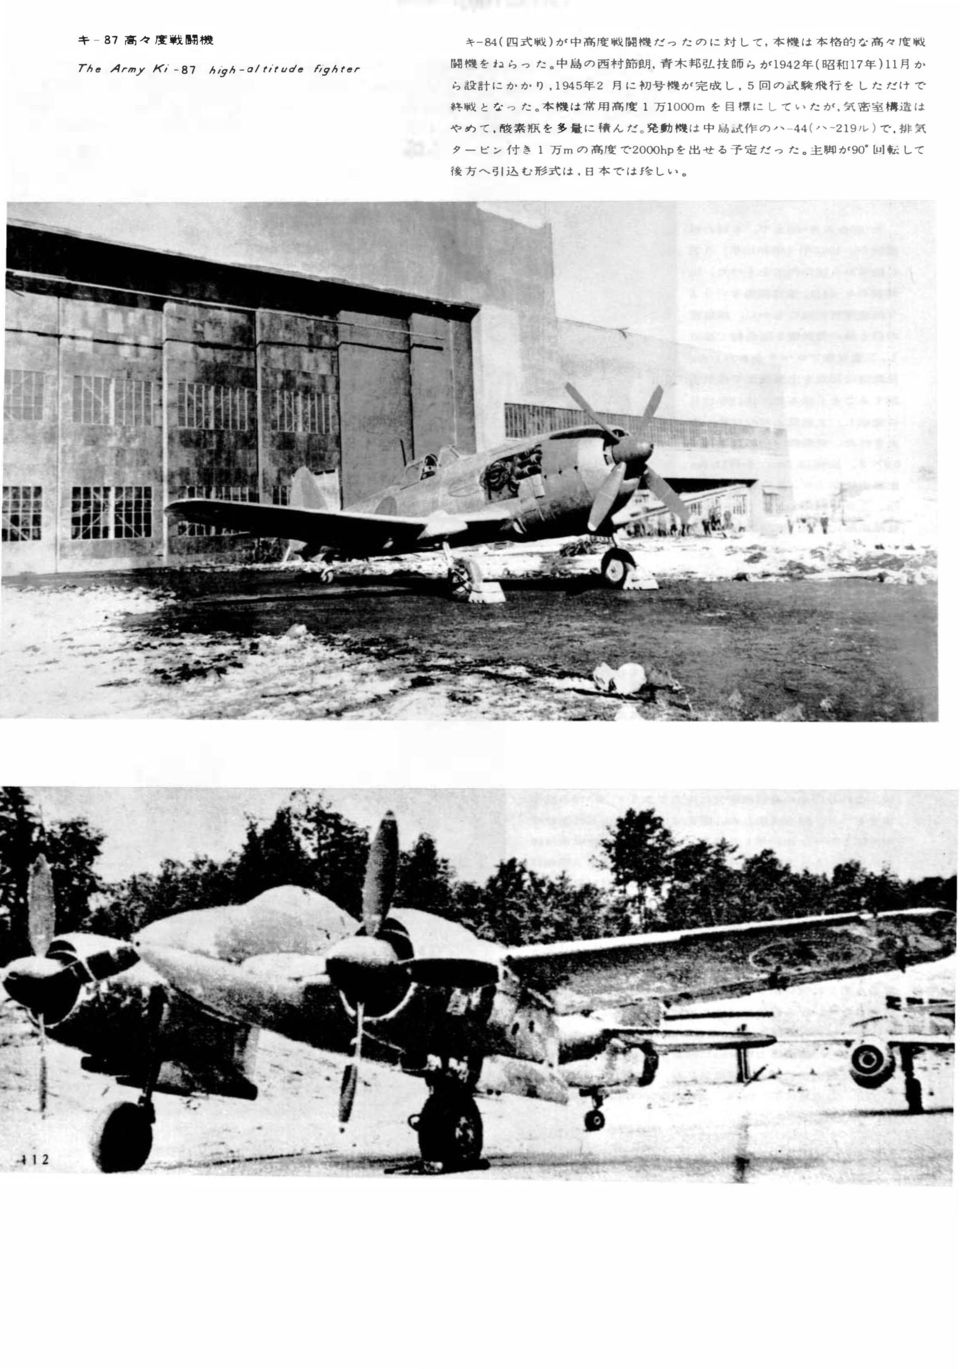 にかかり, 1945 年 2 月 に 初 号 機 が 完 成 し, 5 回 の 試 験 飛 行 をしただけで 終 戦 となった 本 機 は 常 用 高 度 1 万 1 000mを 目 標 にしていたが, 気 密 室 構 造